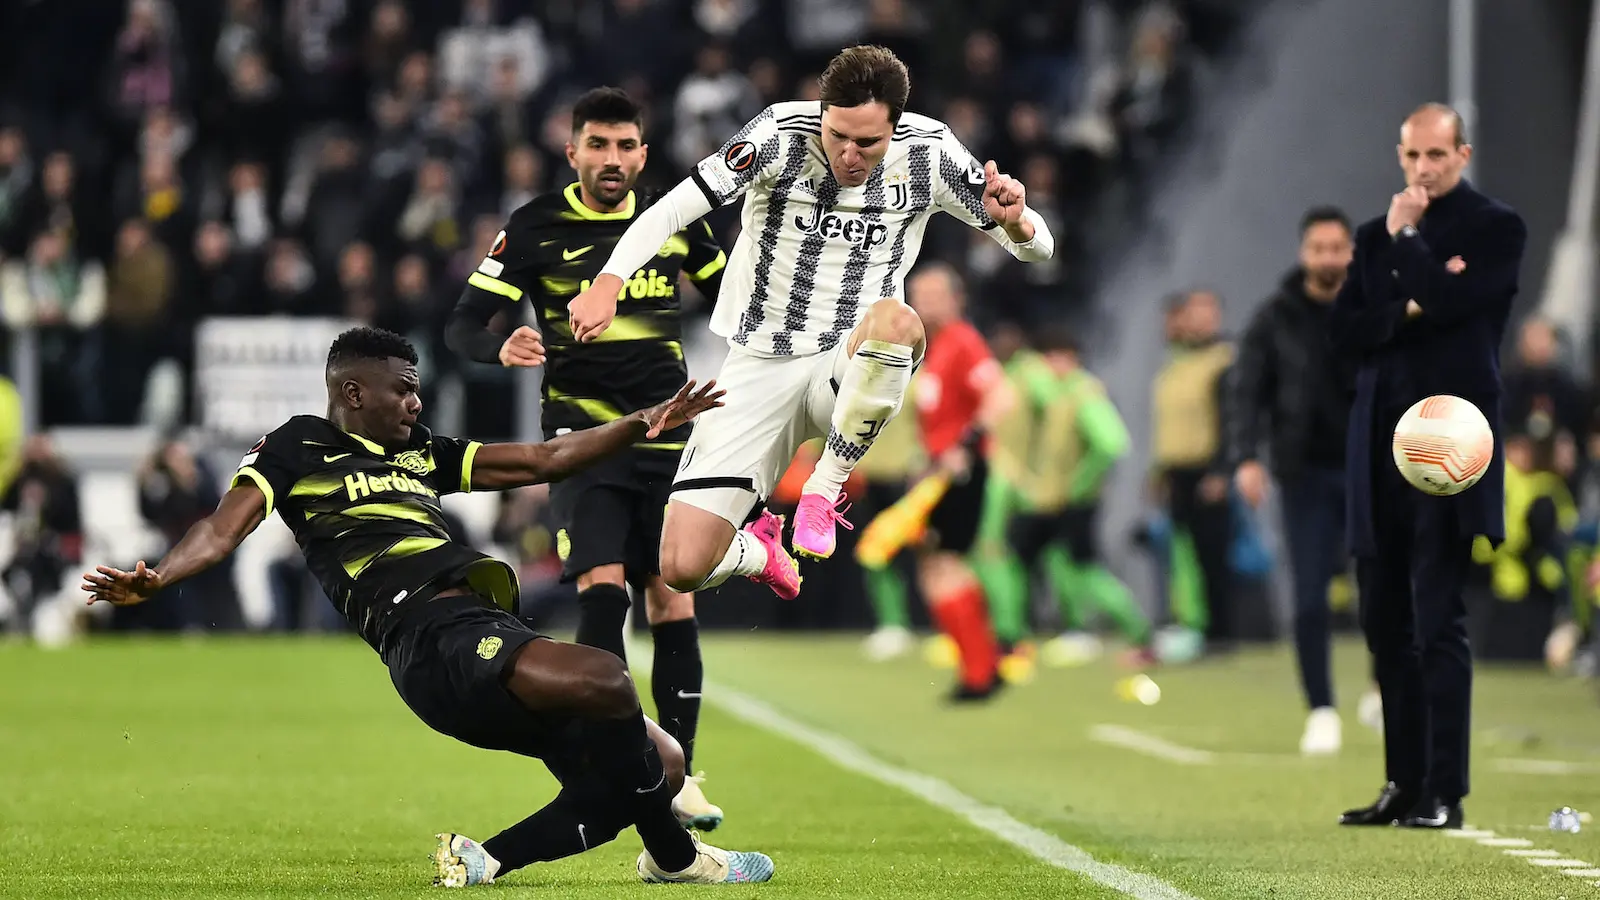 Federico Chiesa Juventus vs Sporting foto Reuters-64386817de6b7.webp